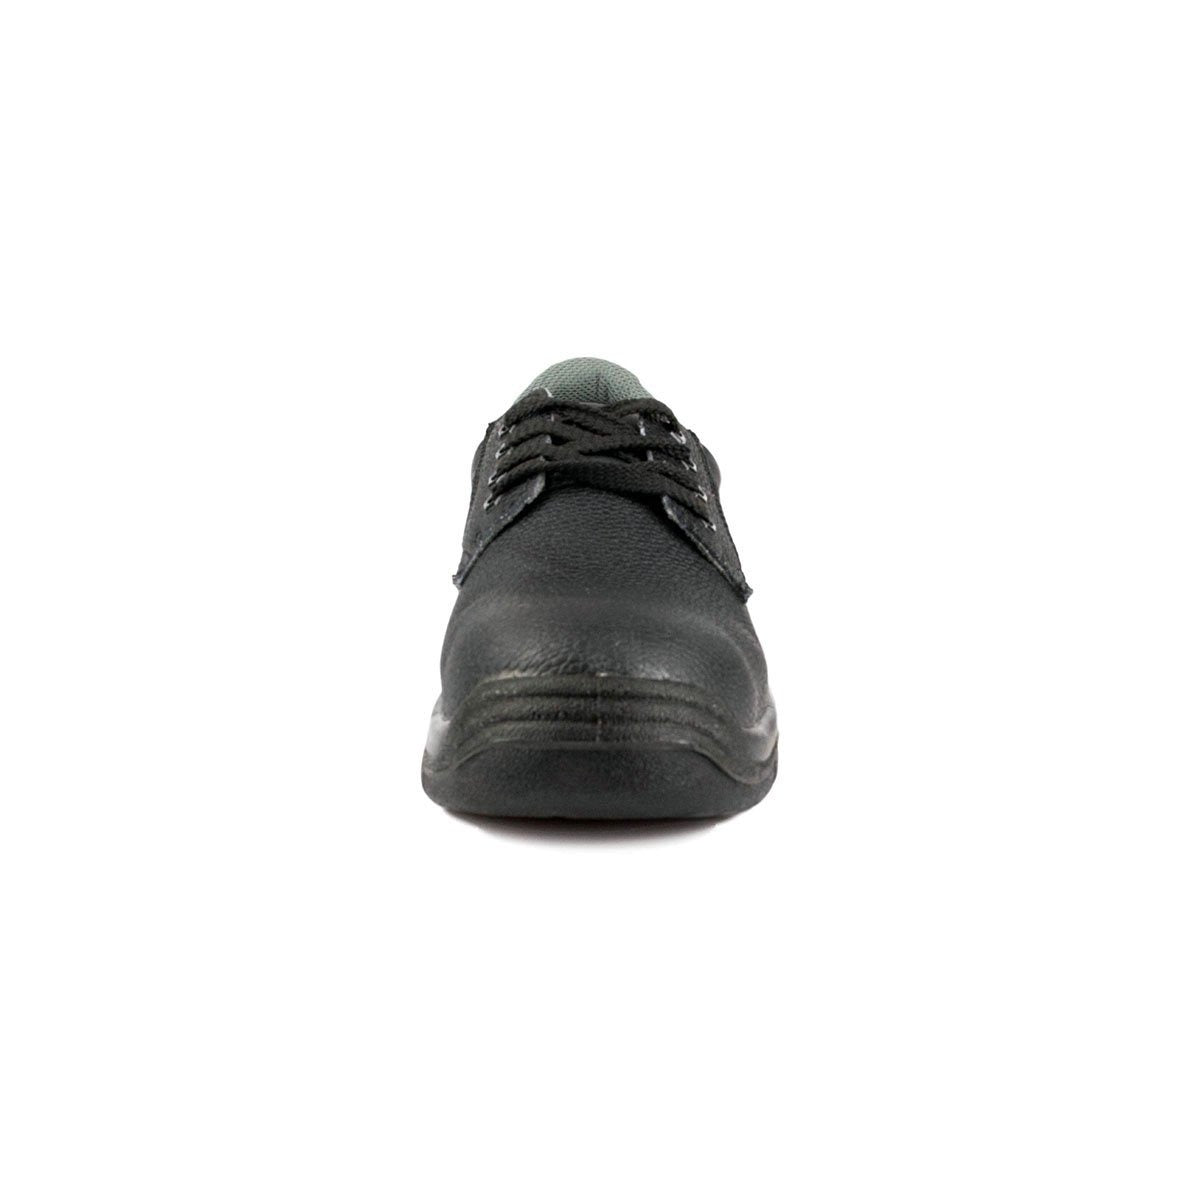 Men's Steel Toe Cap Shoe in Black - Watney Shoes 